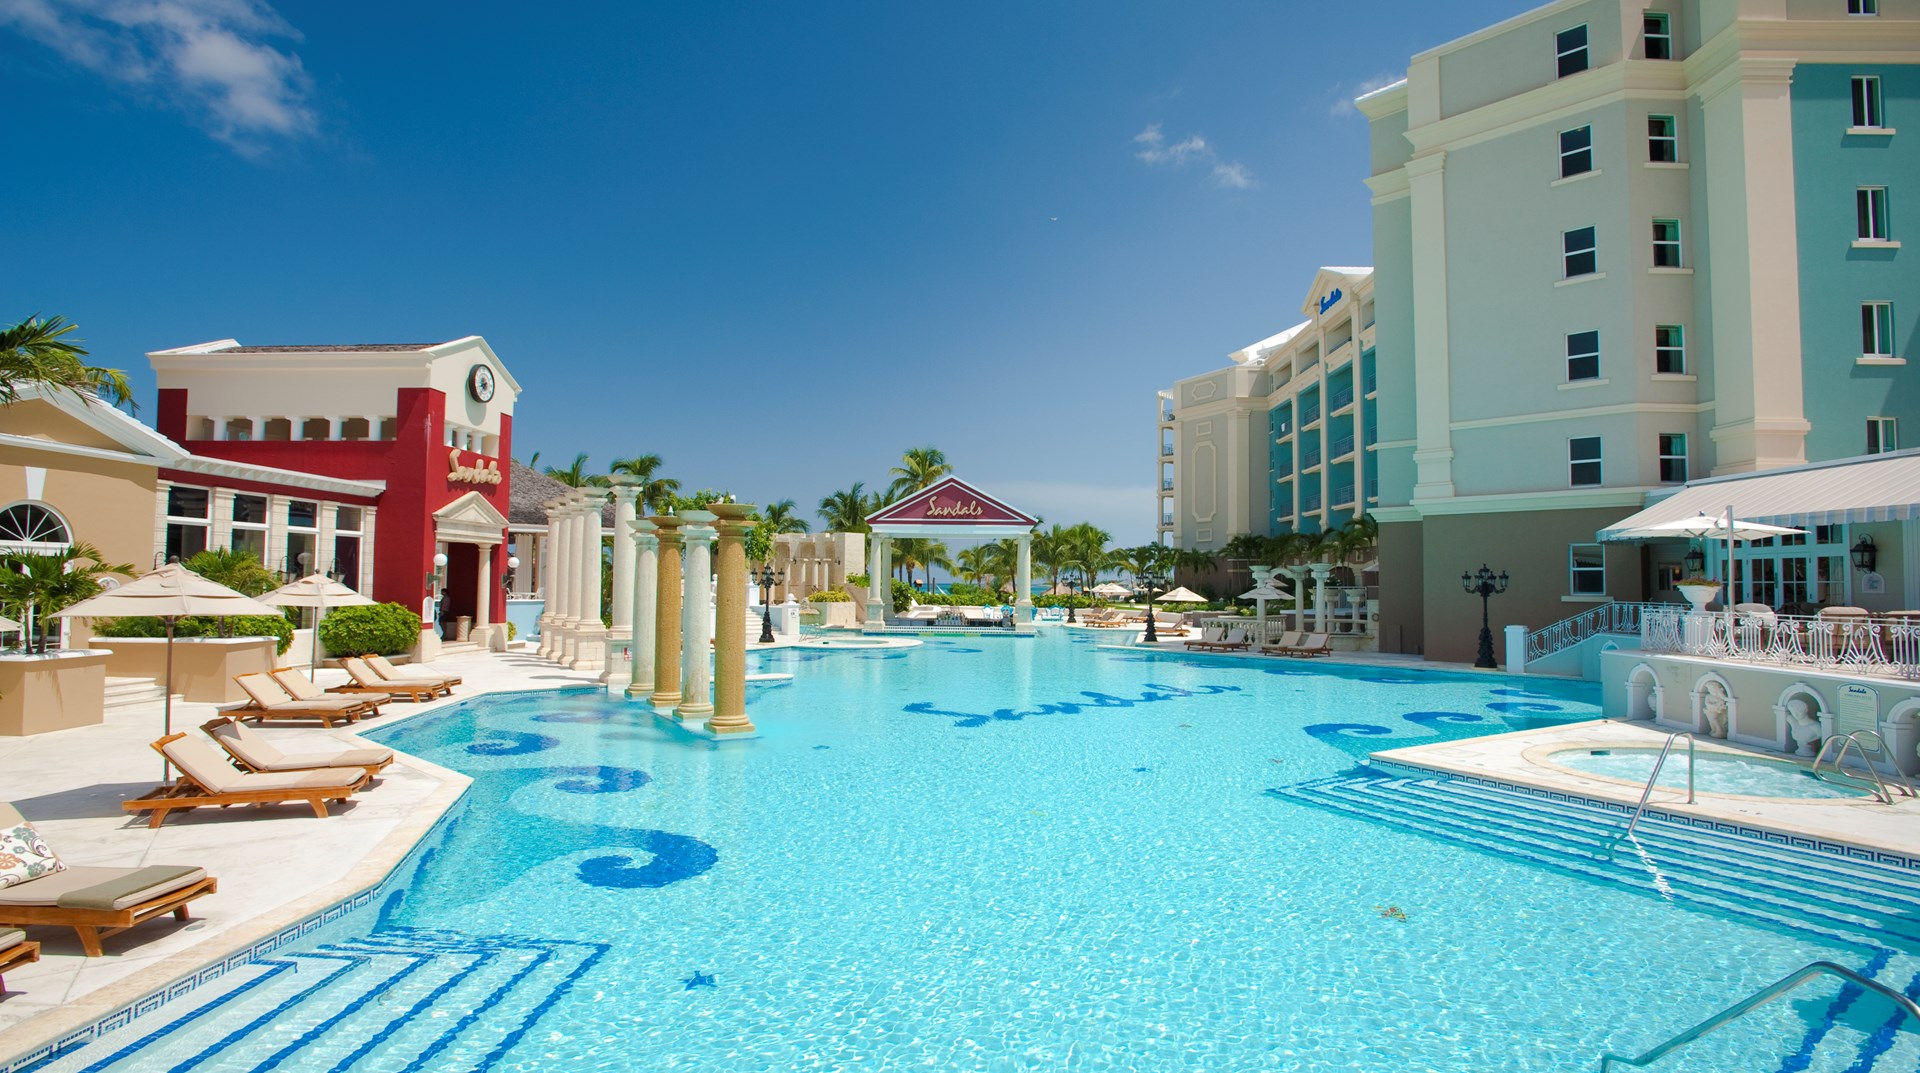 Het meest elegante resort van de Bahamas, met een eigen eiland voor de kust Sandals Royal Bahamian